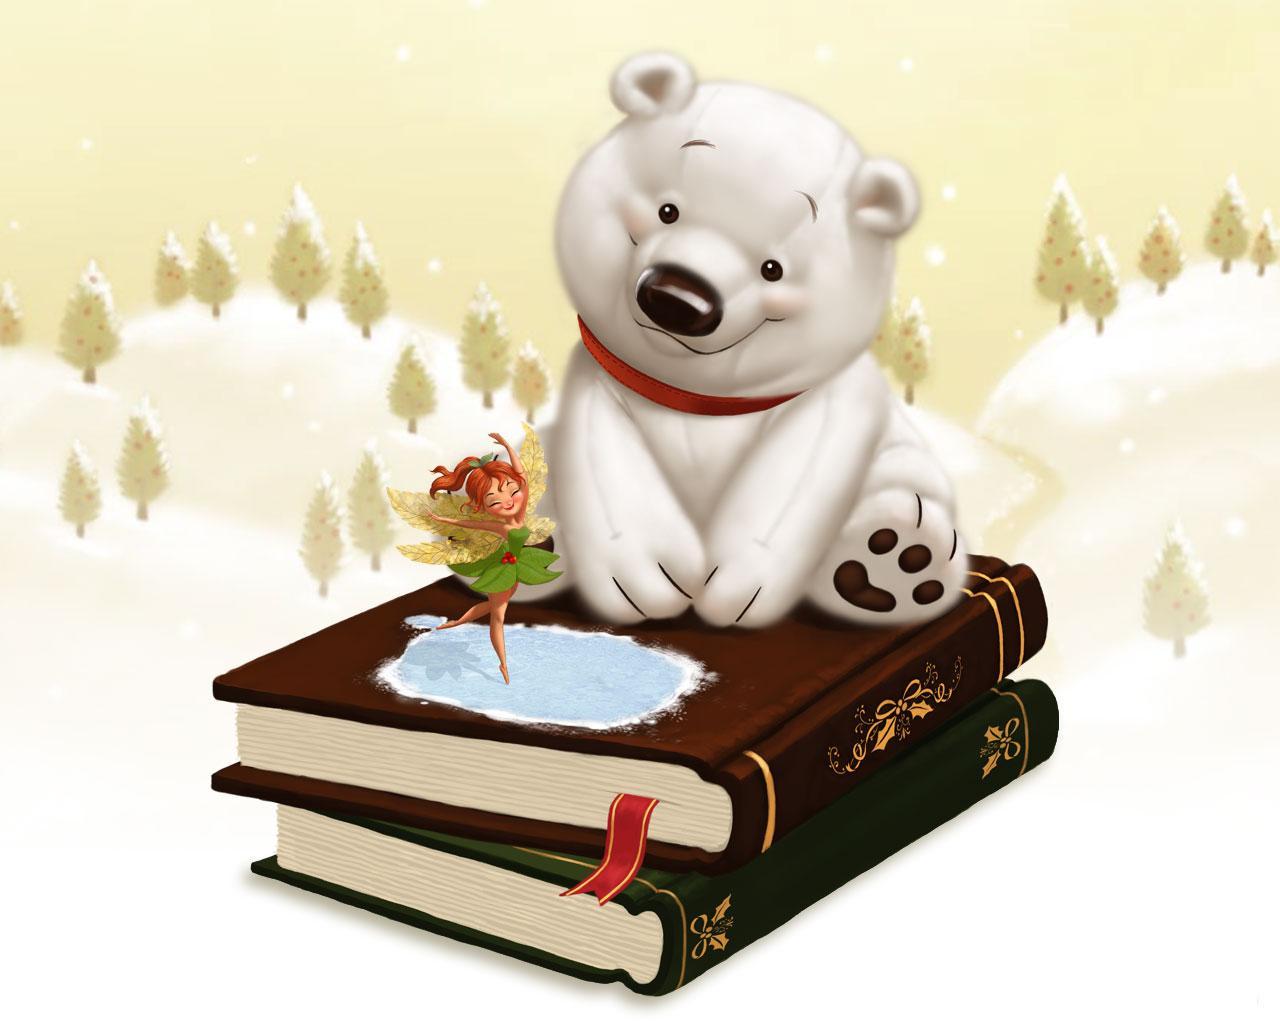 3d обои Фея выпорхнула из книги сказок и танцует перед белым медвежонком  зима # 40949